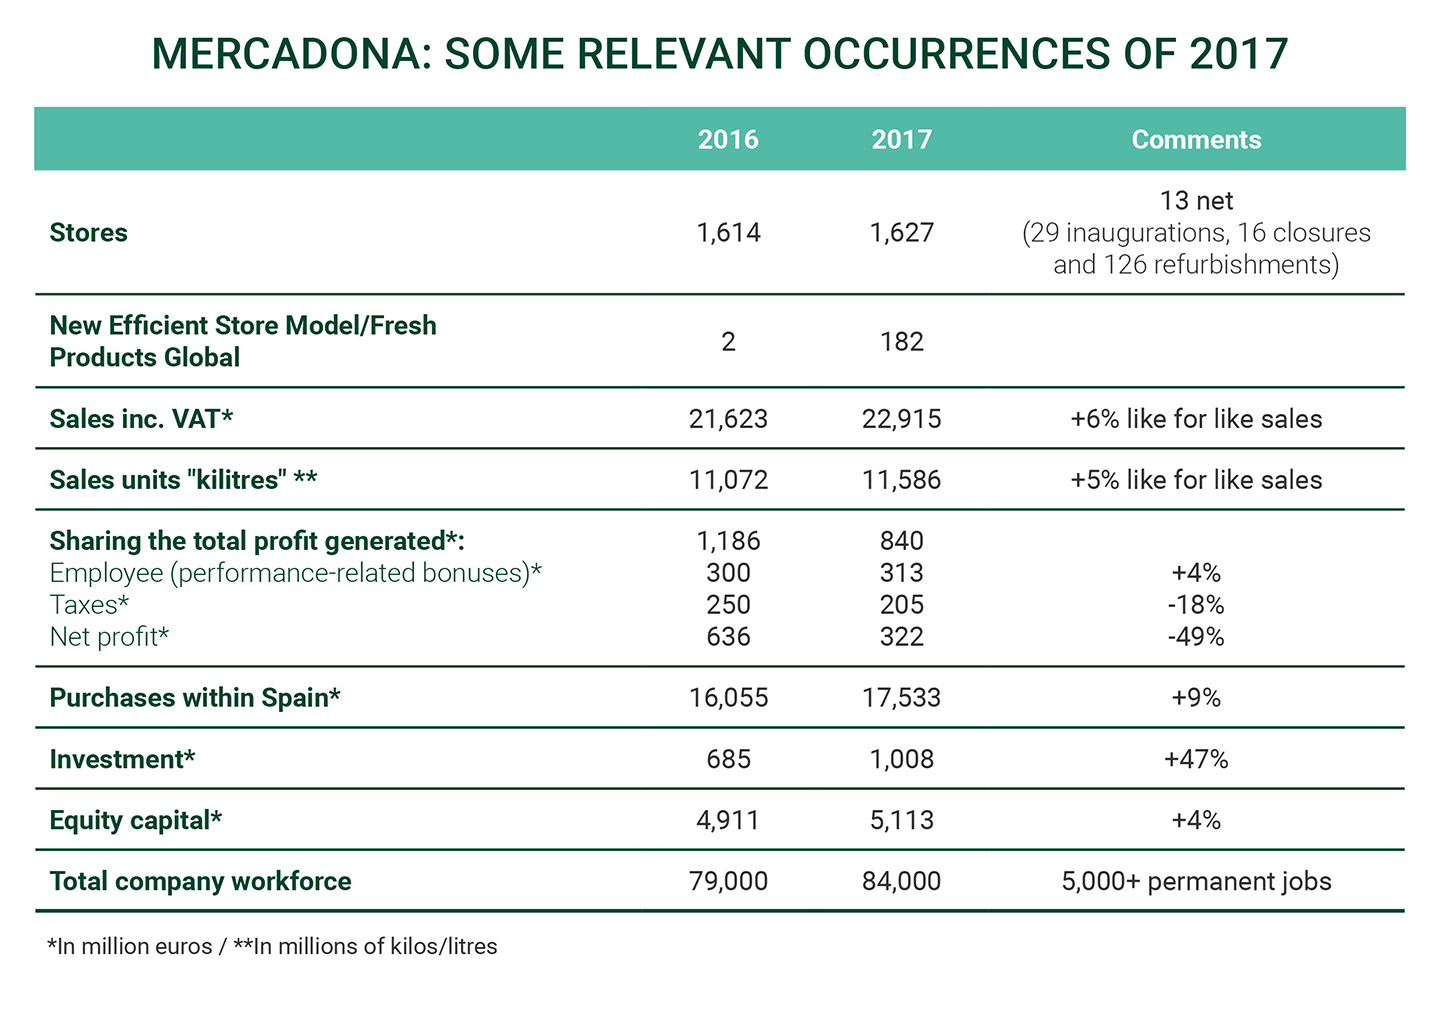 Mercadona: Some relevant occurrences of 2017